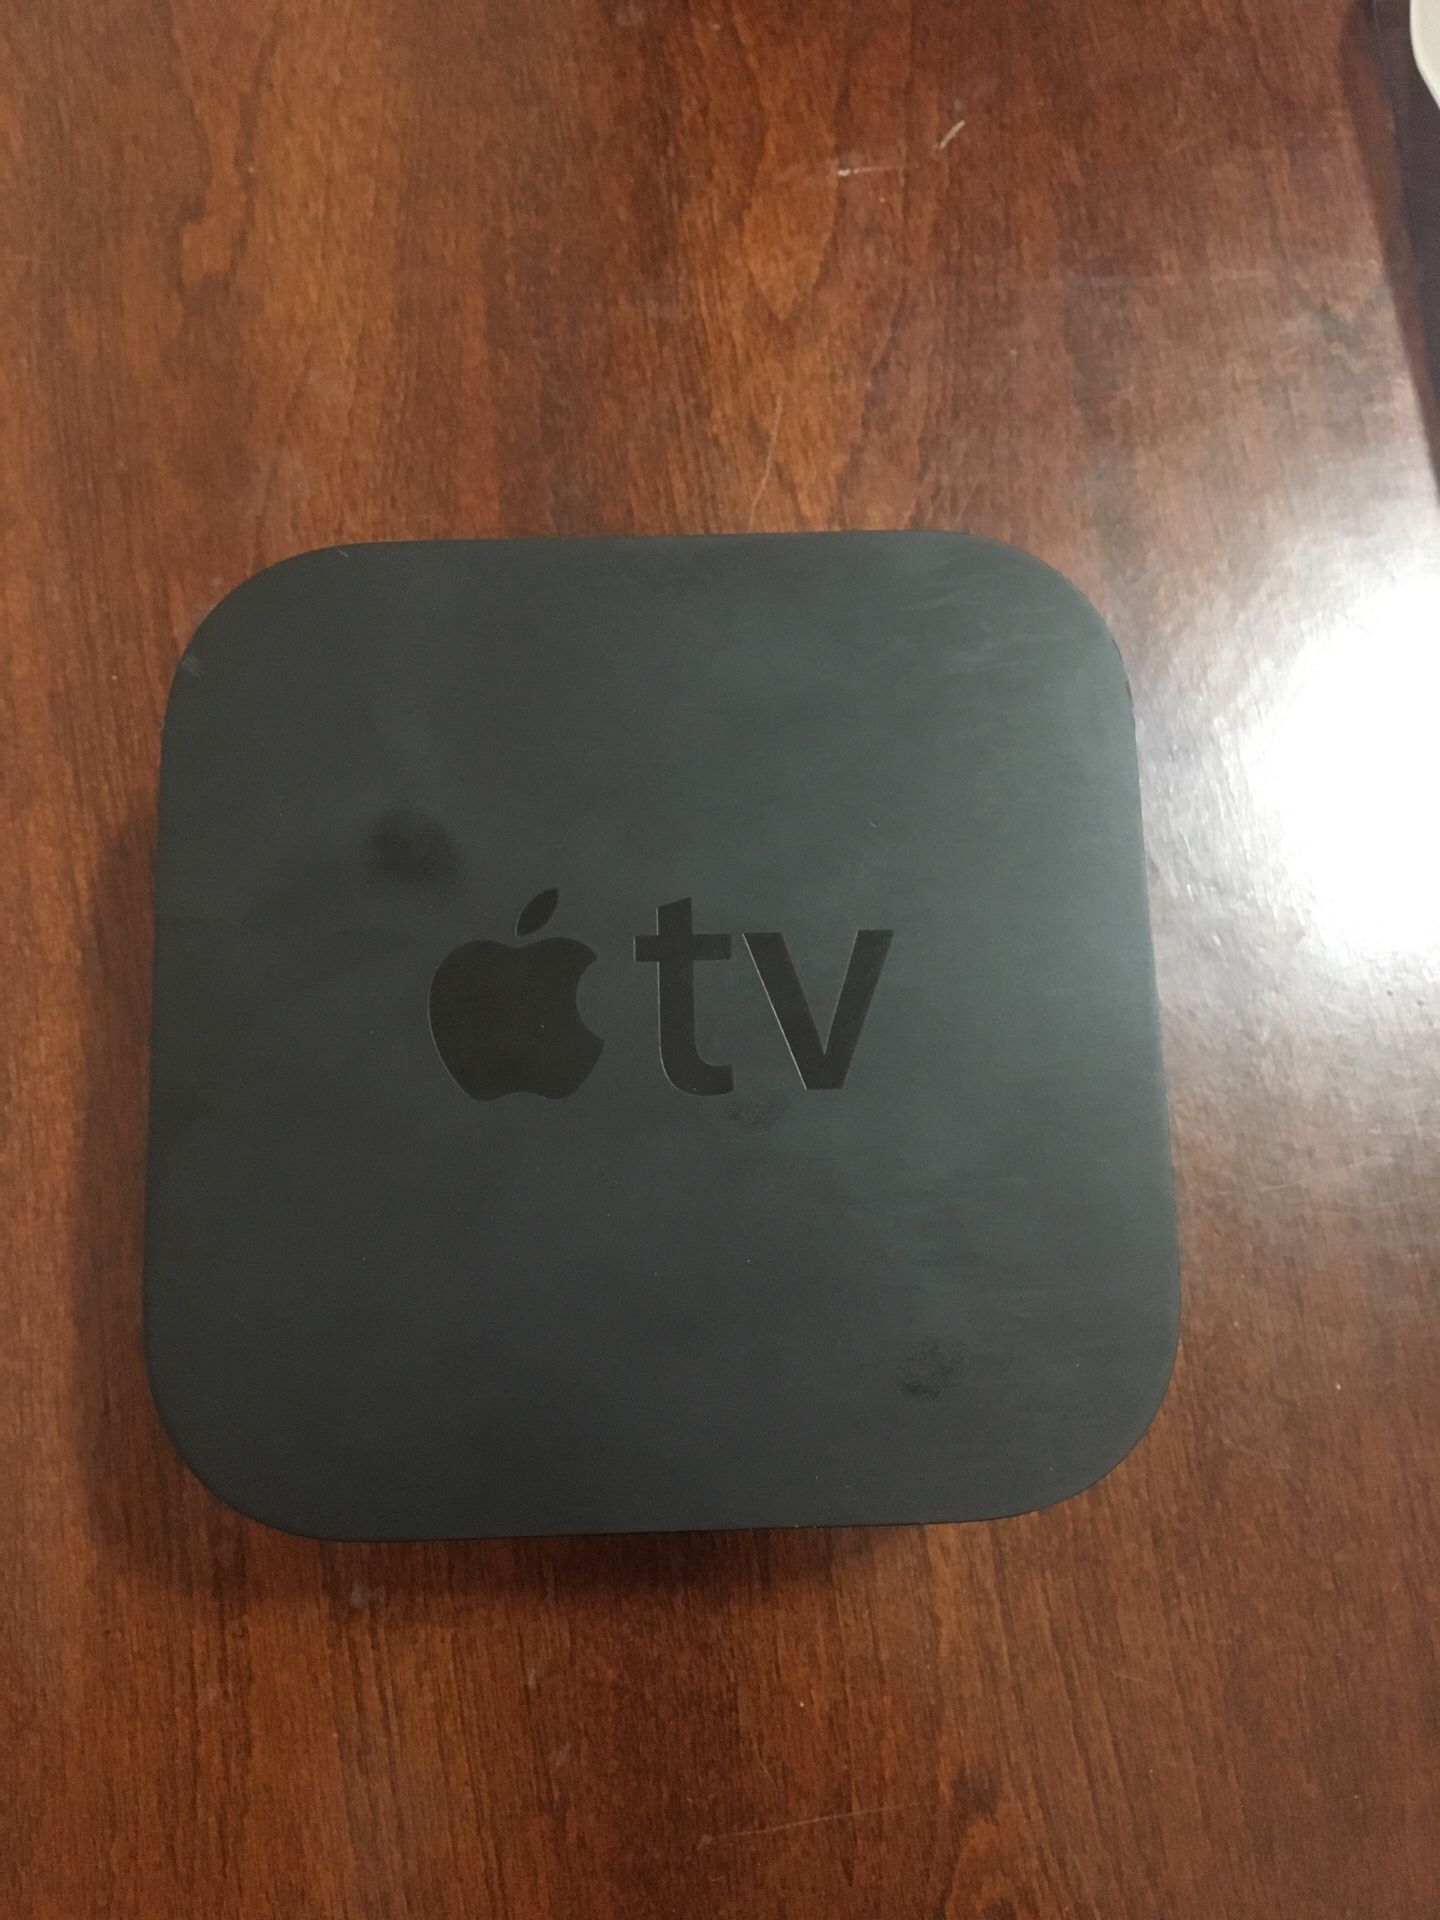 Apple TV 2015 no remote